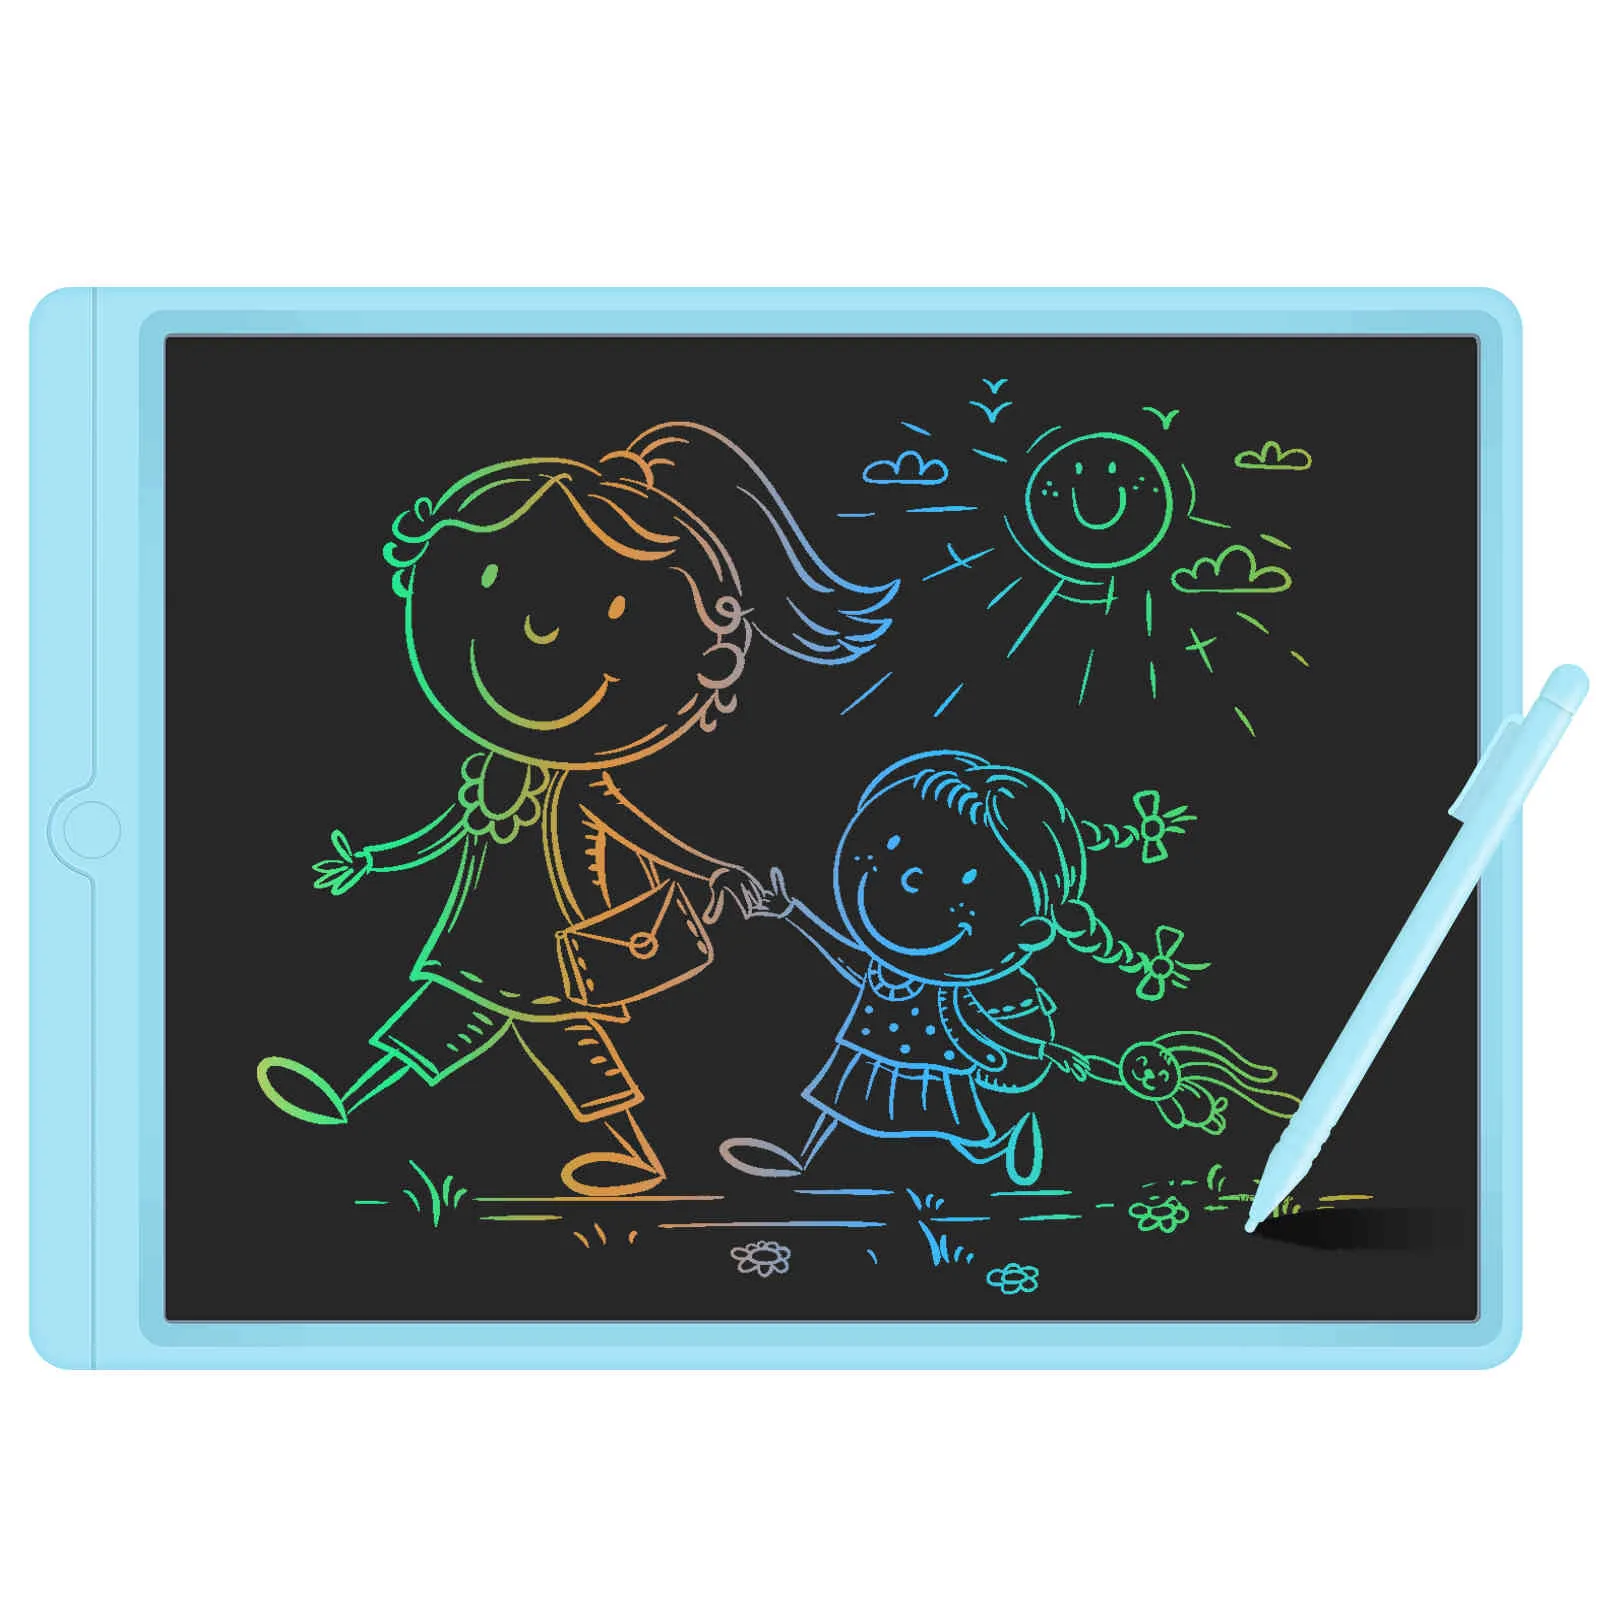 13,5 inch LCD-scherm Tablet Digitale Elektronische Graphics Drawing Board Doodle Pad met Stylus Pen Gift Kids